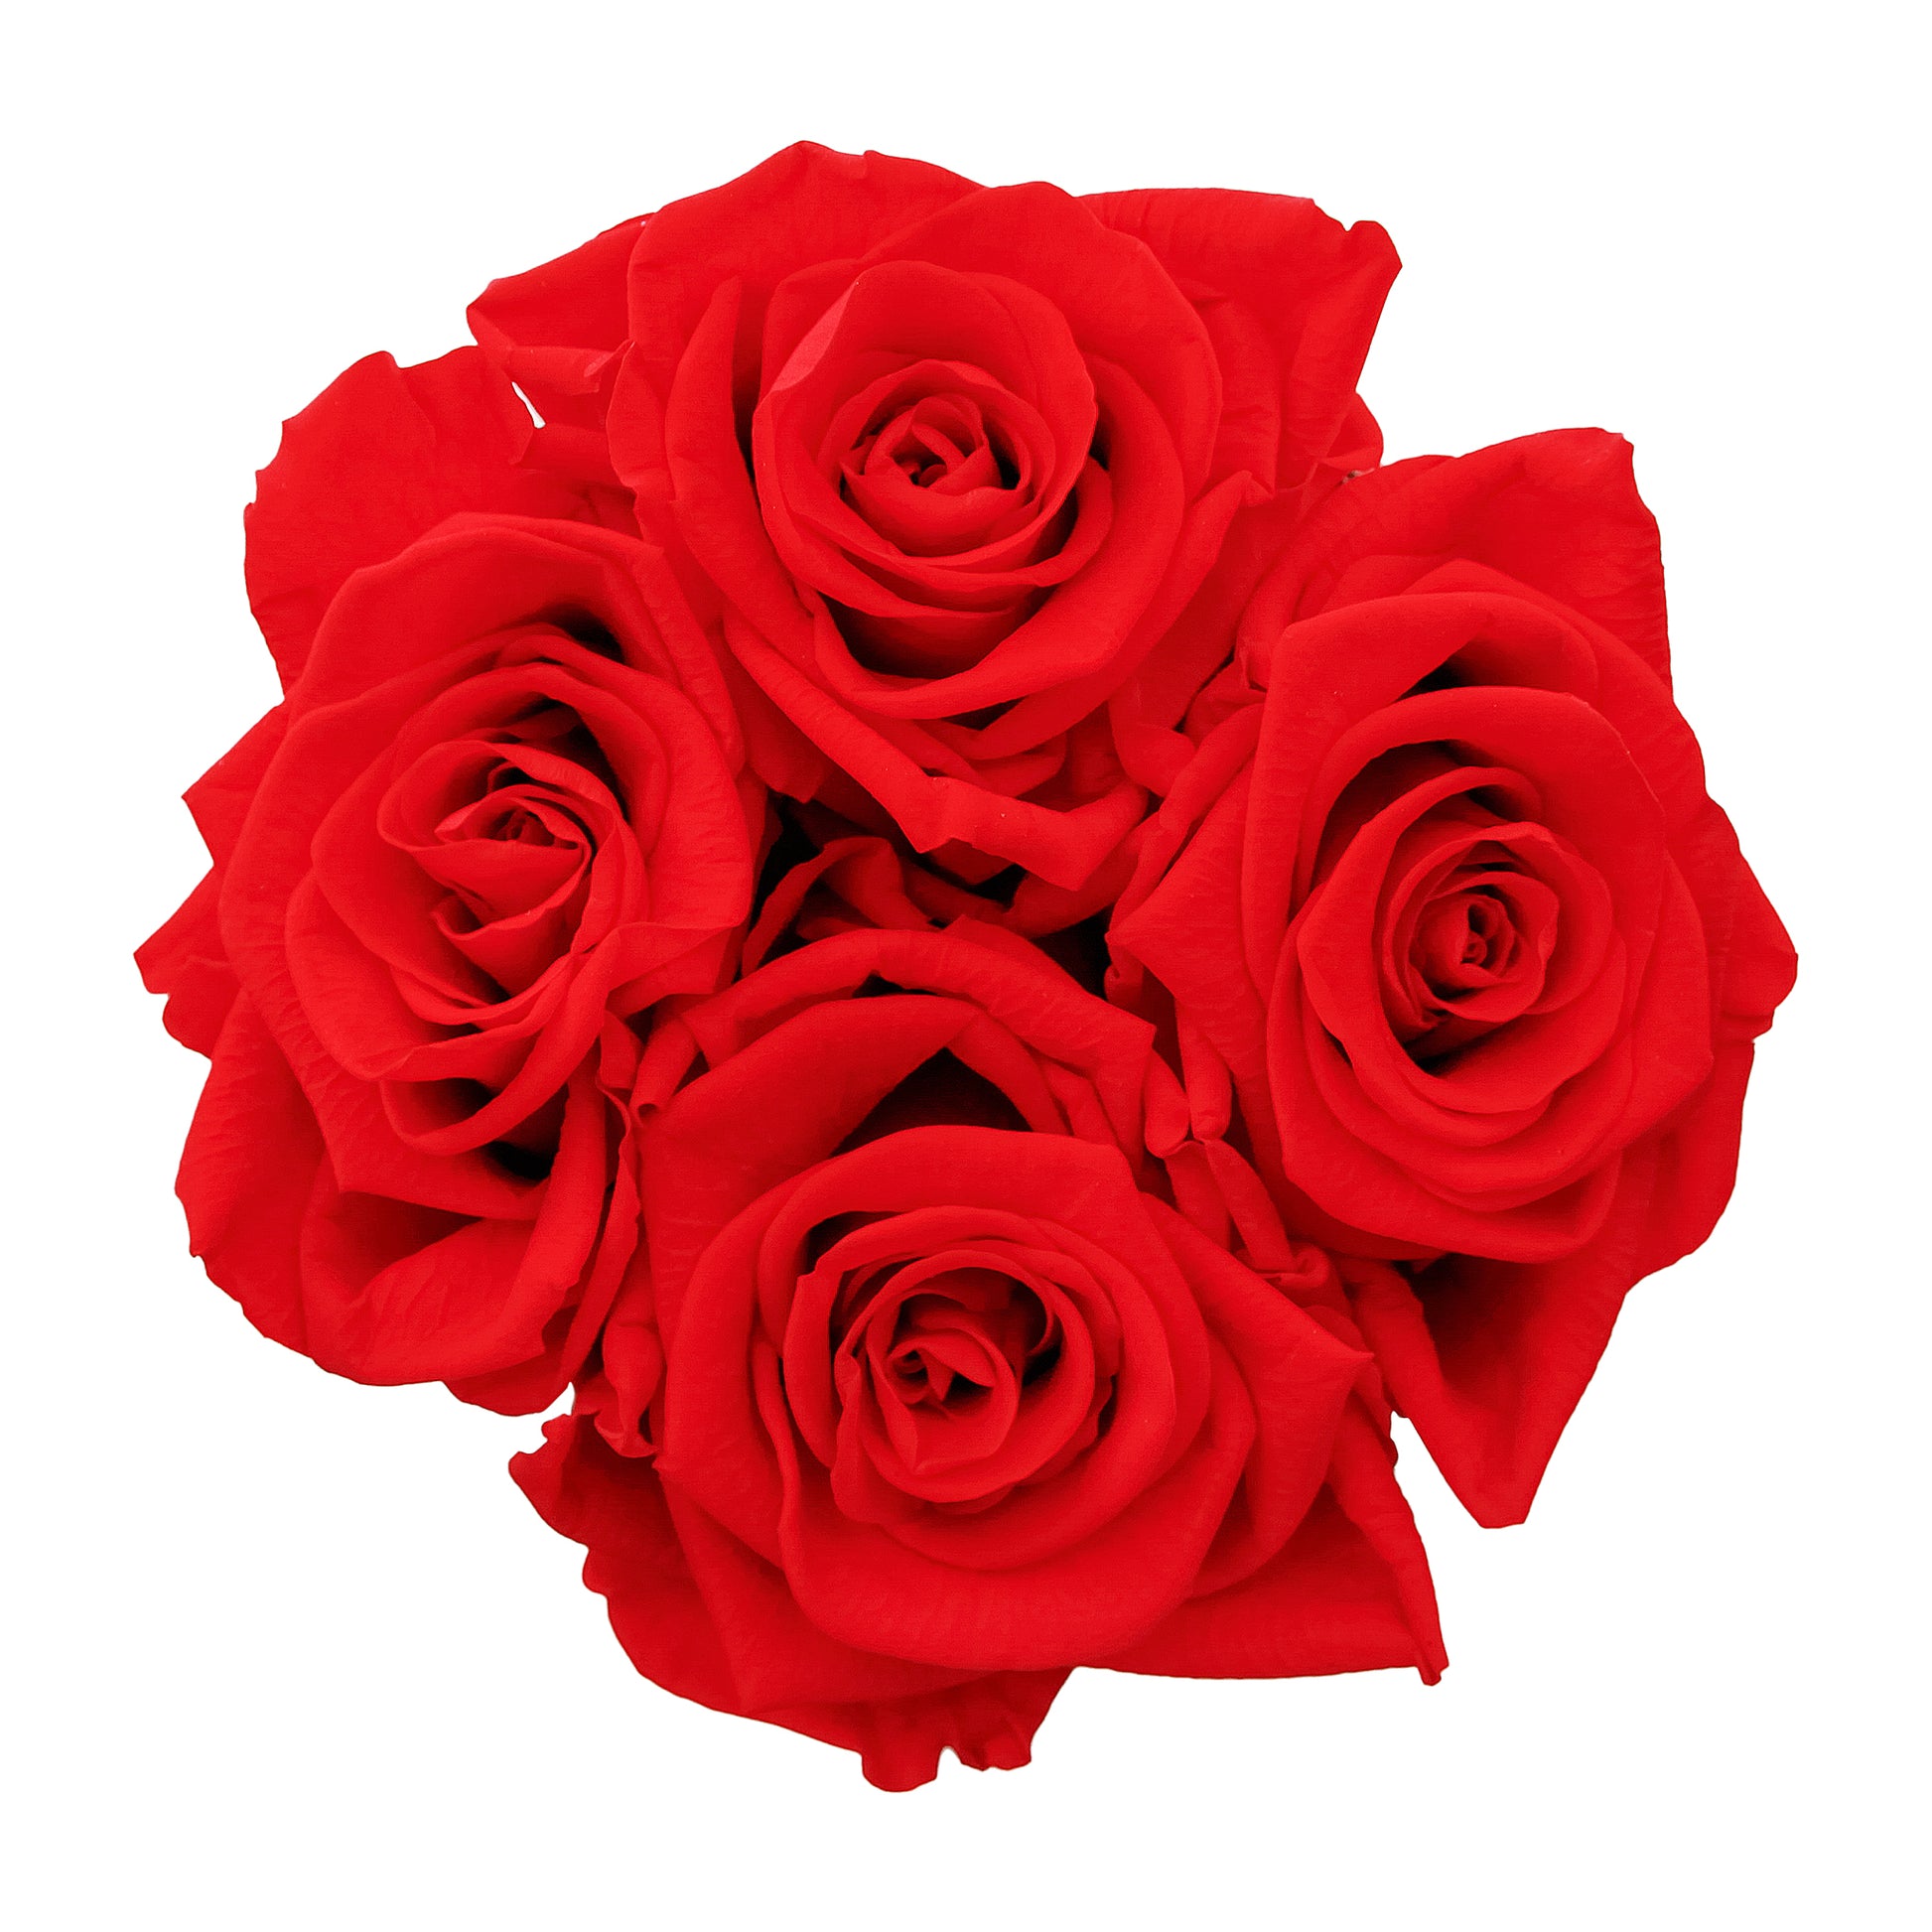 Red Roses & S Round White Box -3